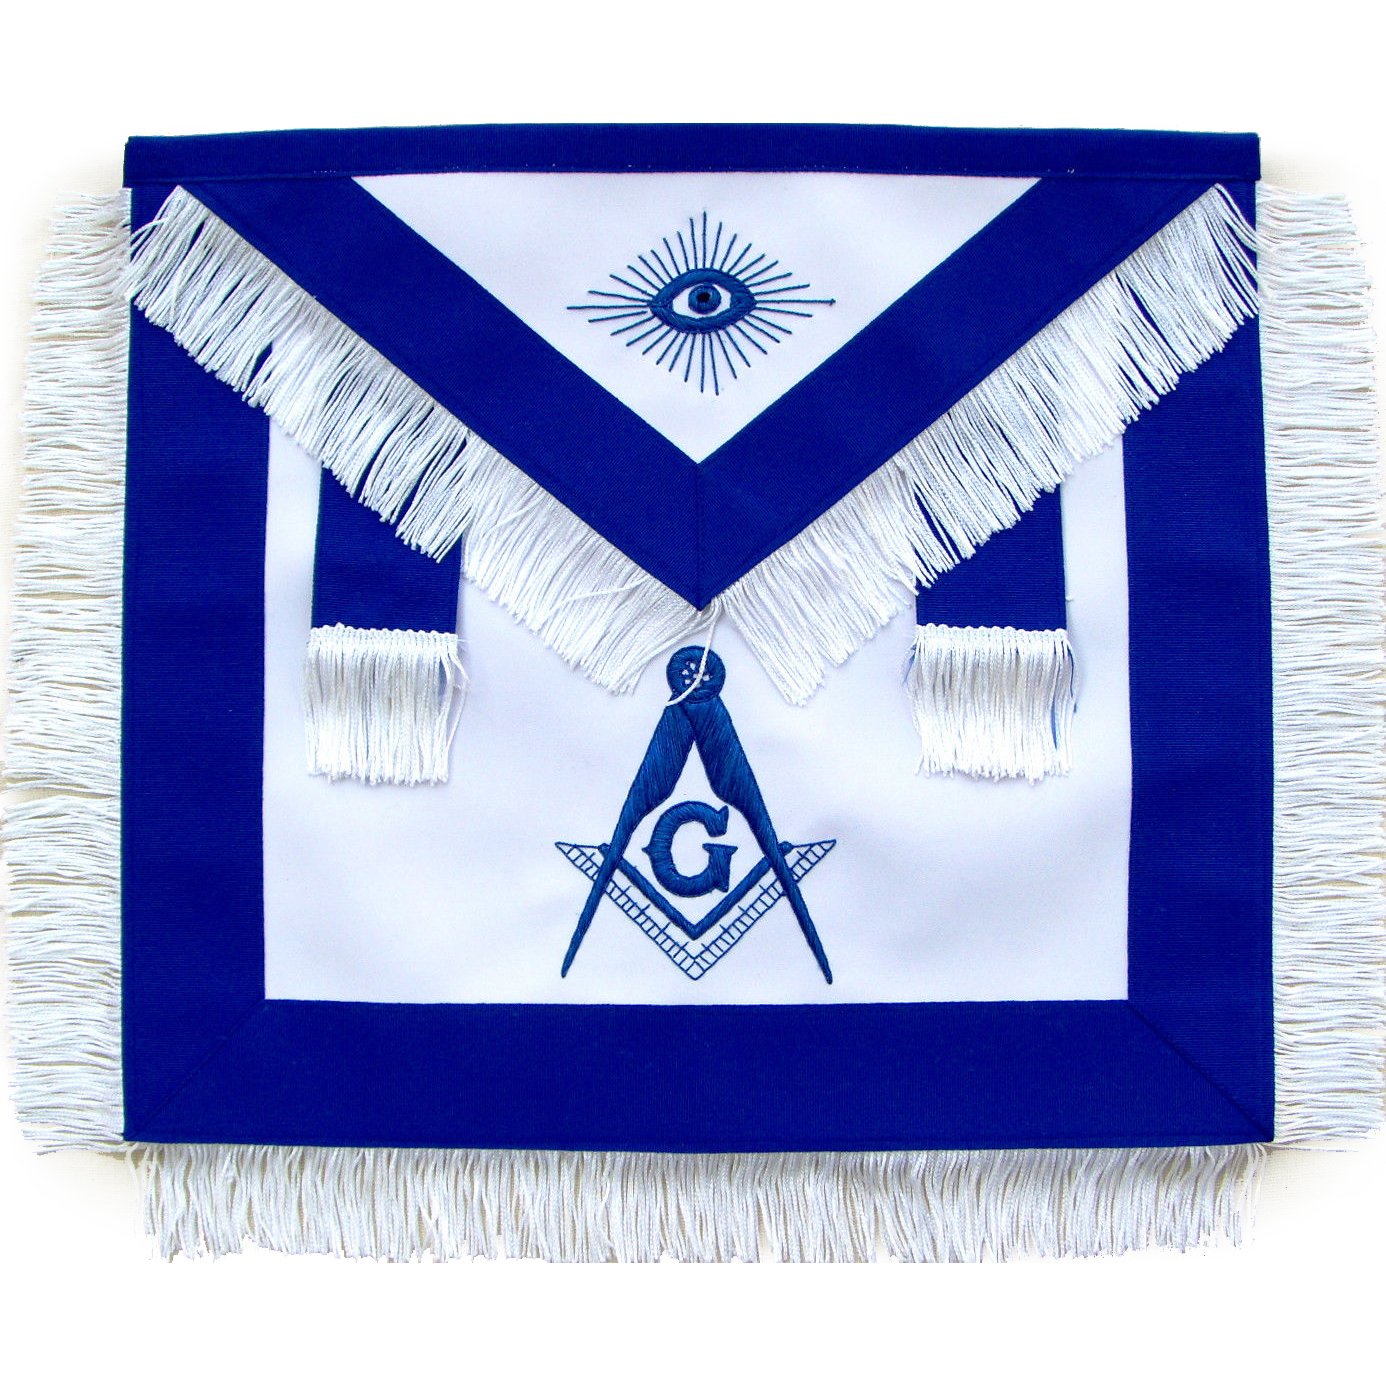 Master Mason Blue Lodge Apron - Royal Blue with White Fringe Tassels - Bricks Masons